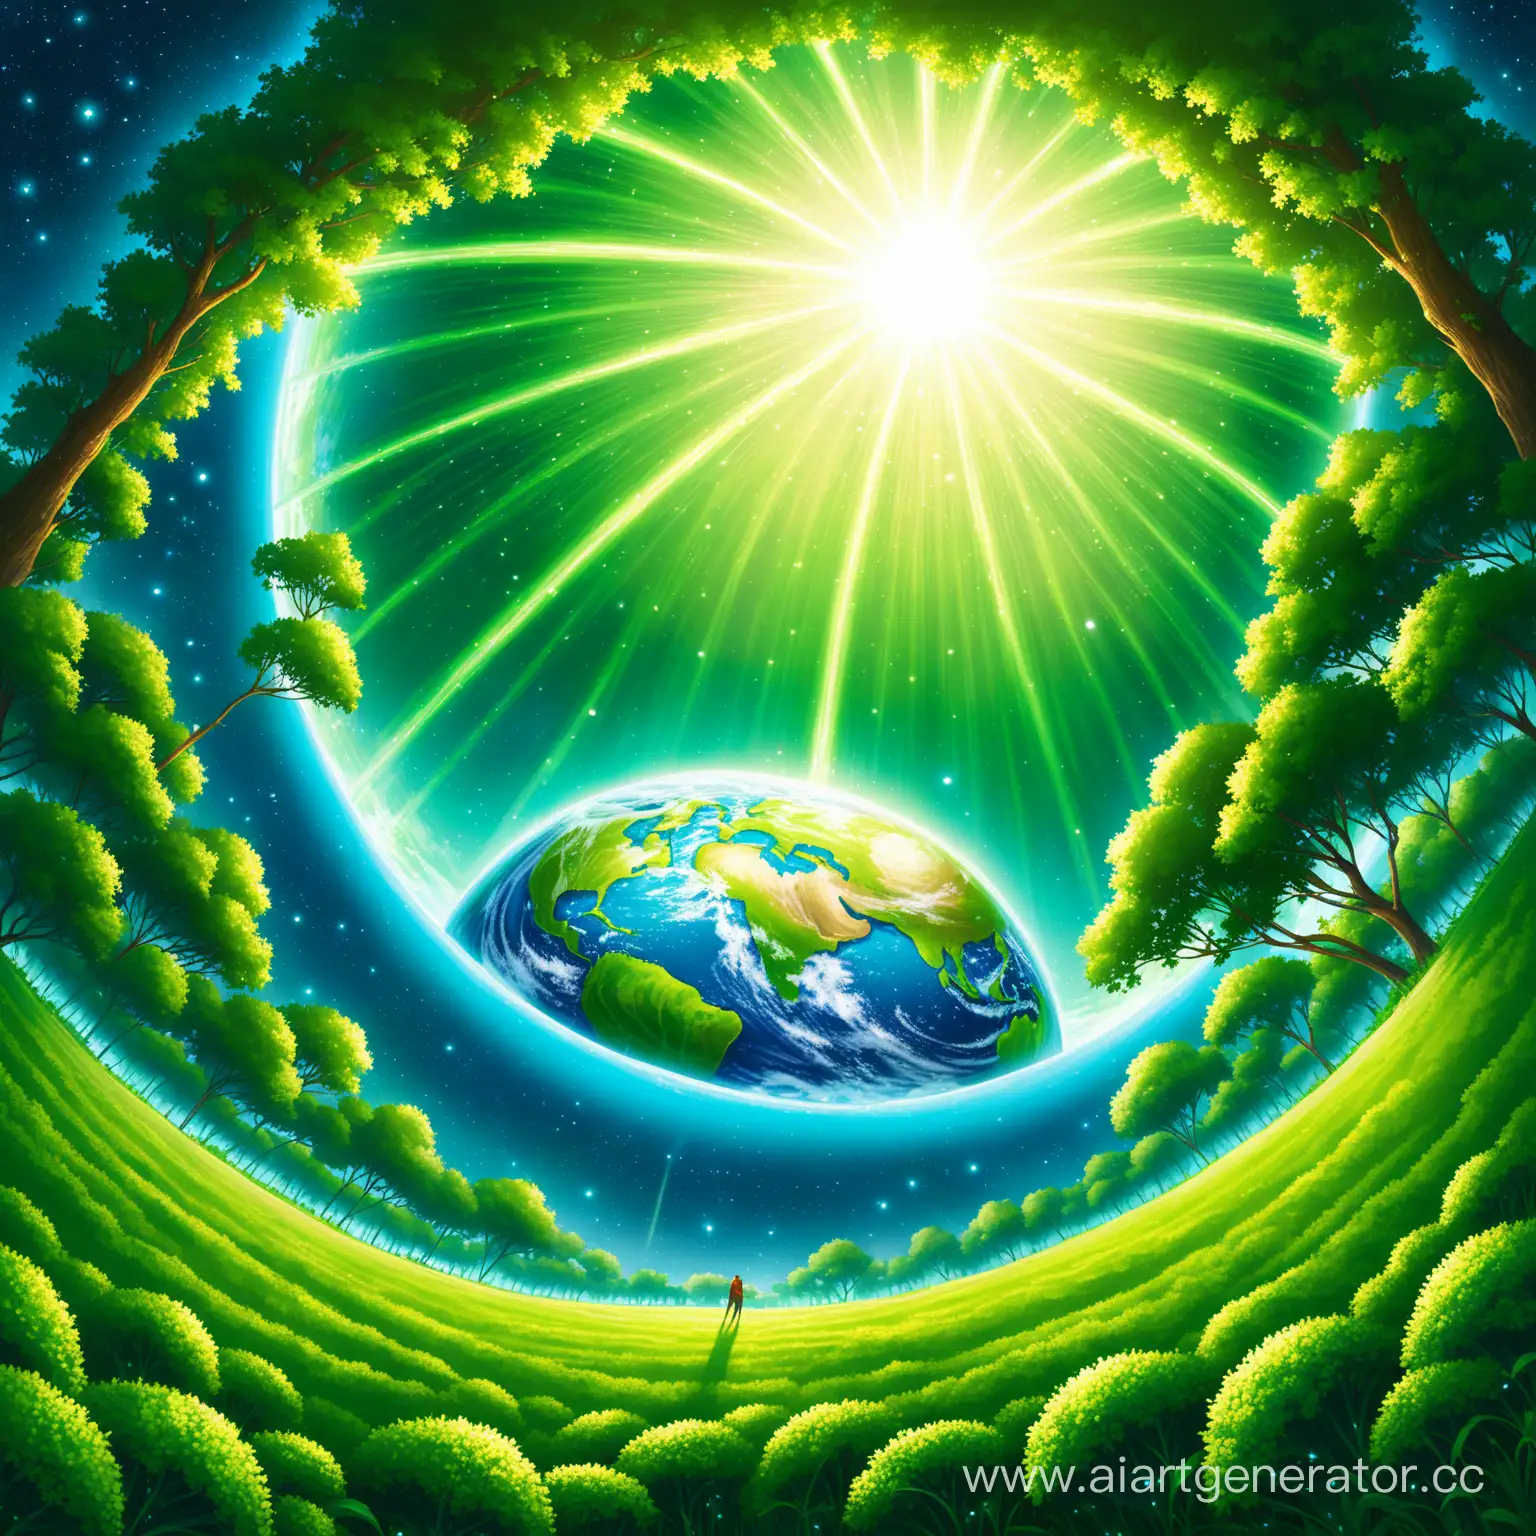 Настанет день, когда мы увидим нашу планету прекрасной, зелёной и свободной! И ради этого стоит трудиться.